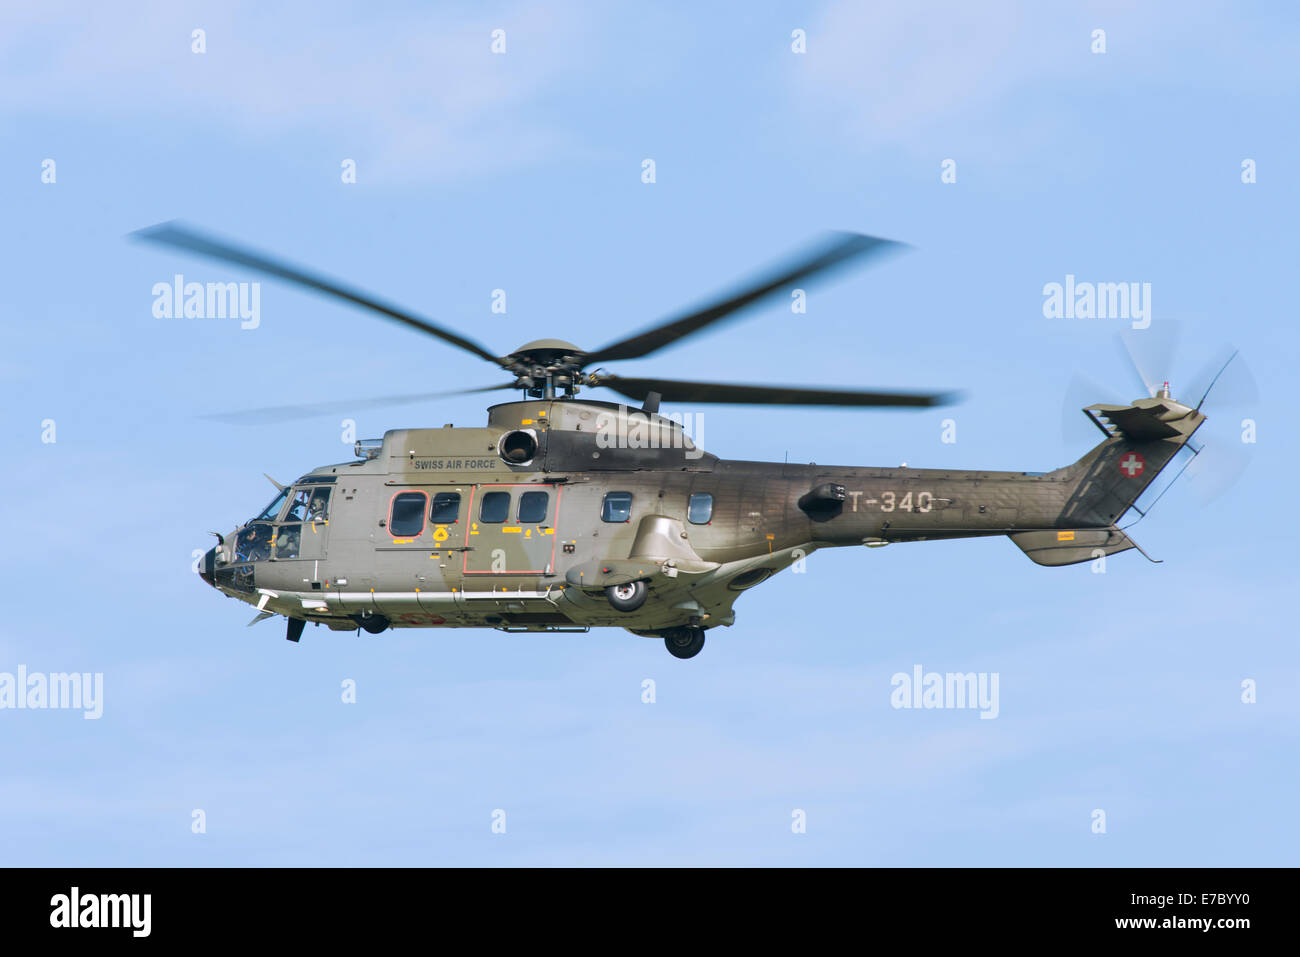 PAYERNE, Svizzera - 7 settembre: Volo del team Super Puma 2014 elicottero su ARIA14 in airshow di Payerne, Svizzera Foto Stock